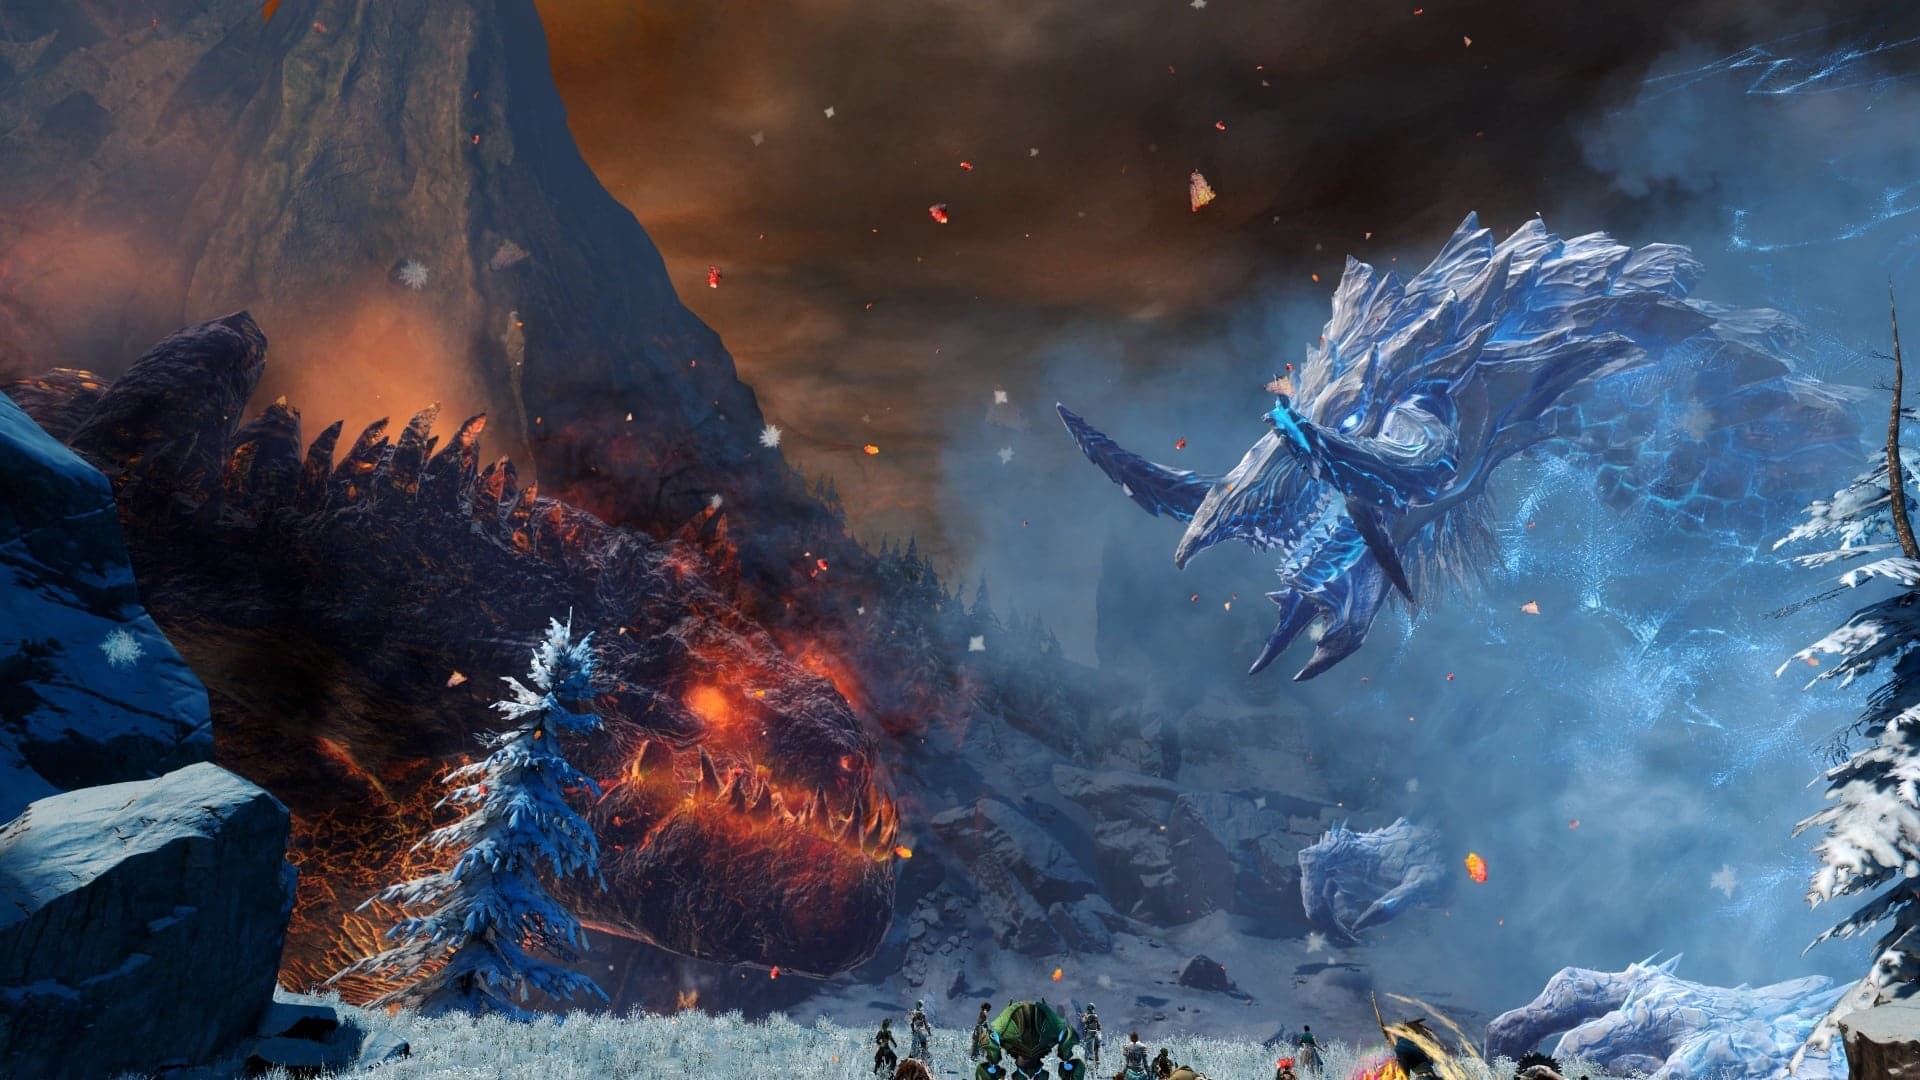 Na história principal do jogo, você liberta o mundo da ameaça dos dragões gigantes